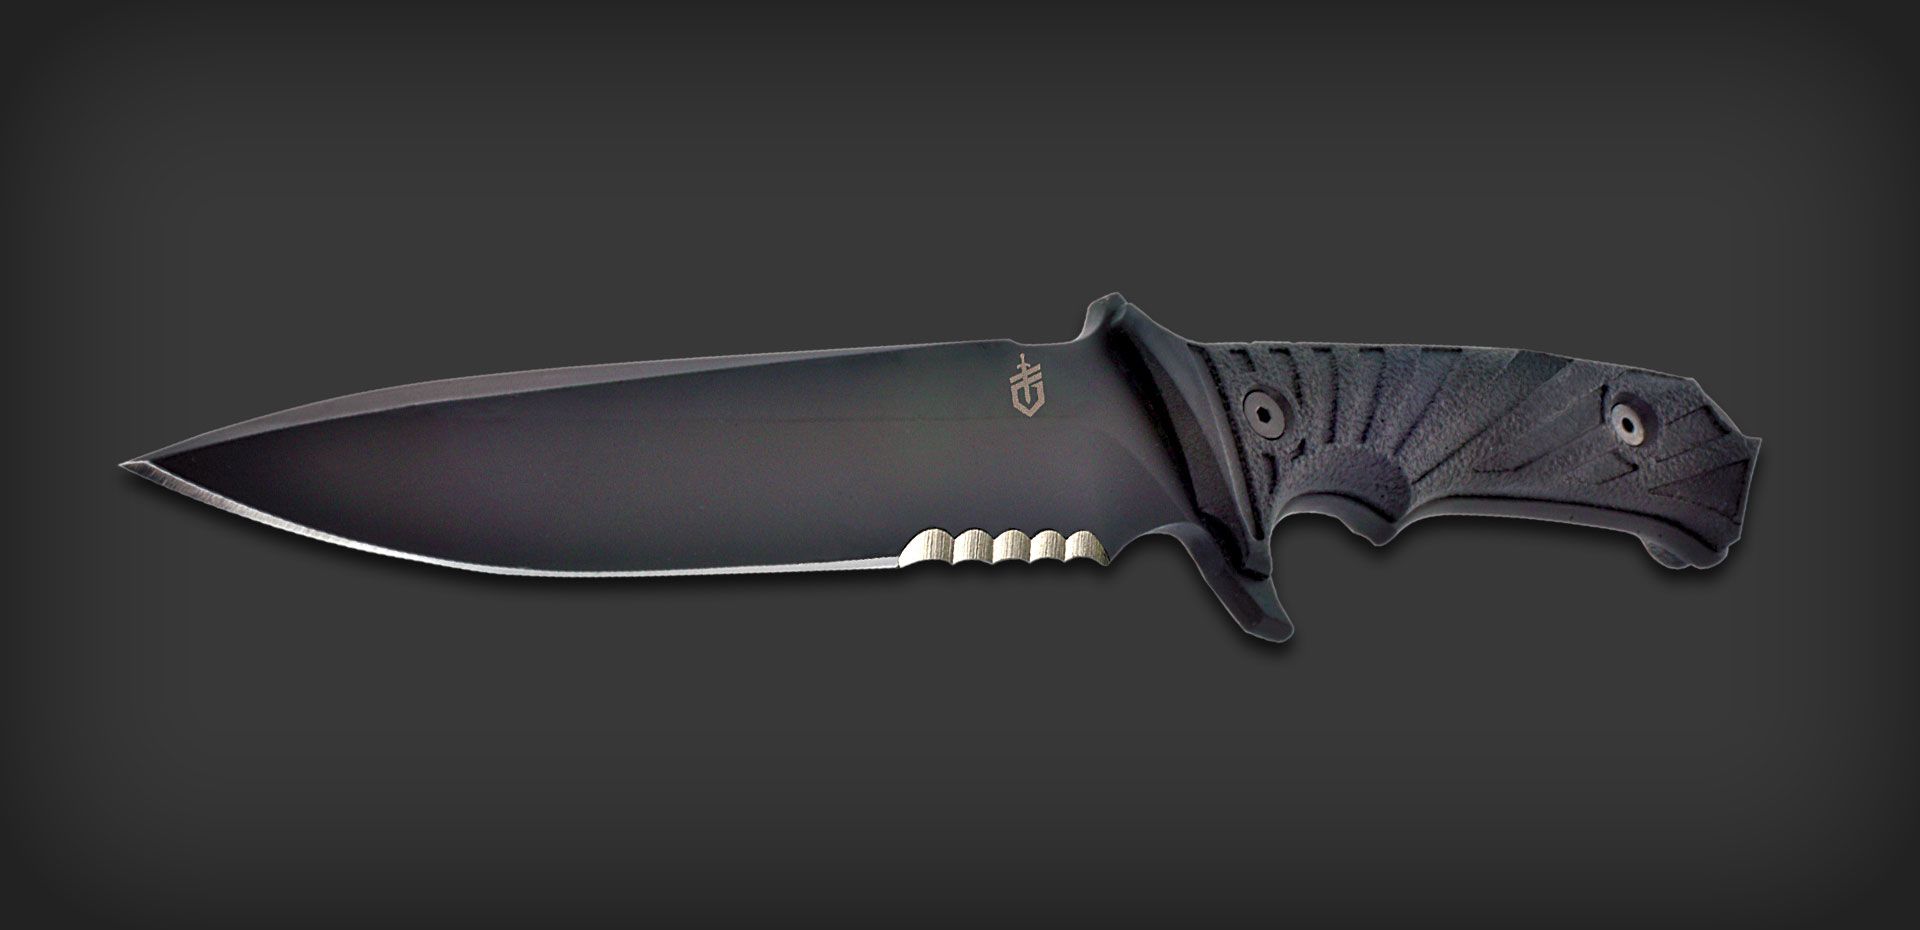 Gerber LHR Combat Knife 6.87